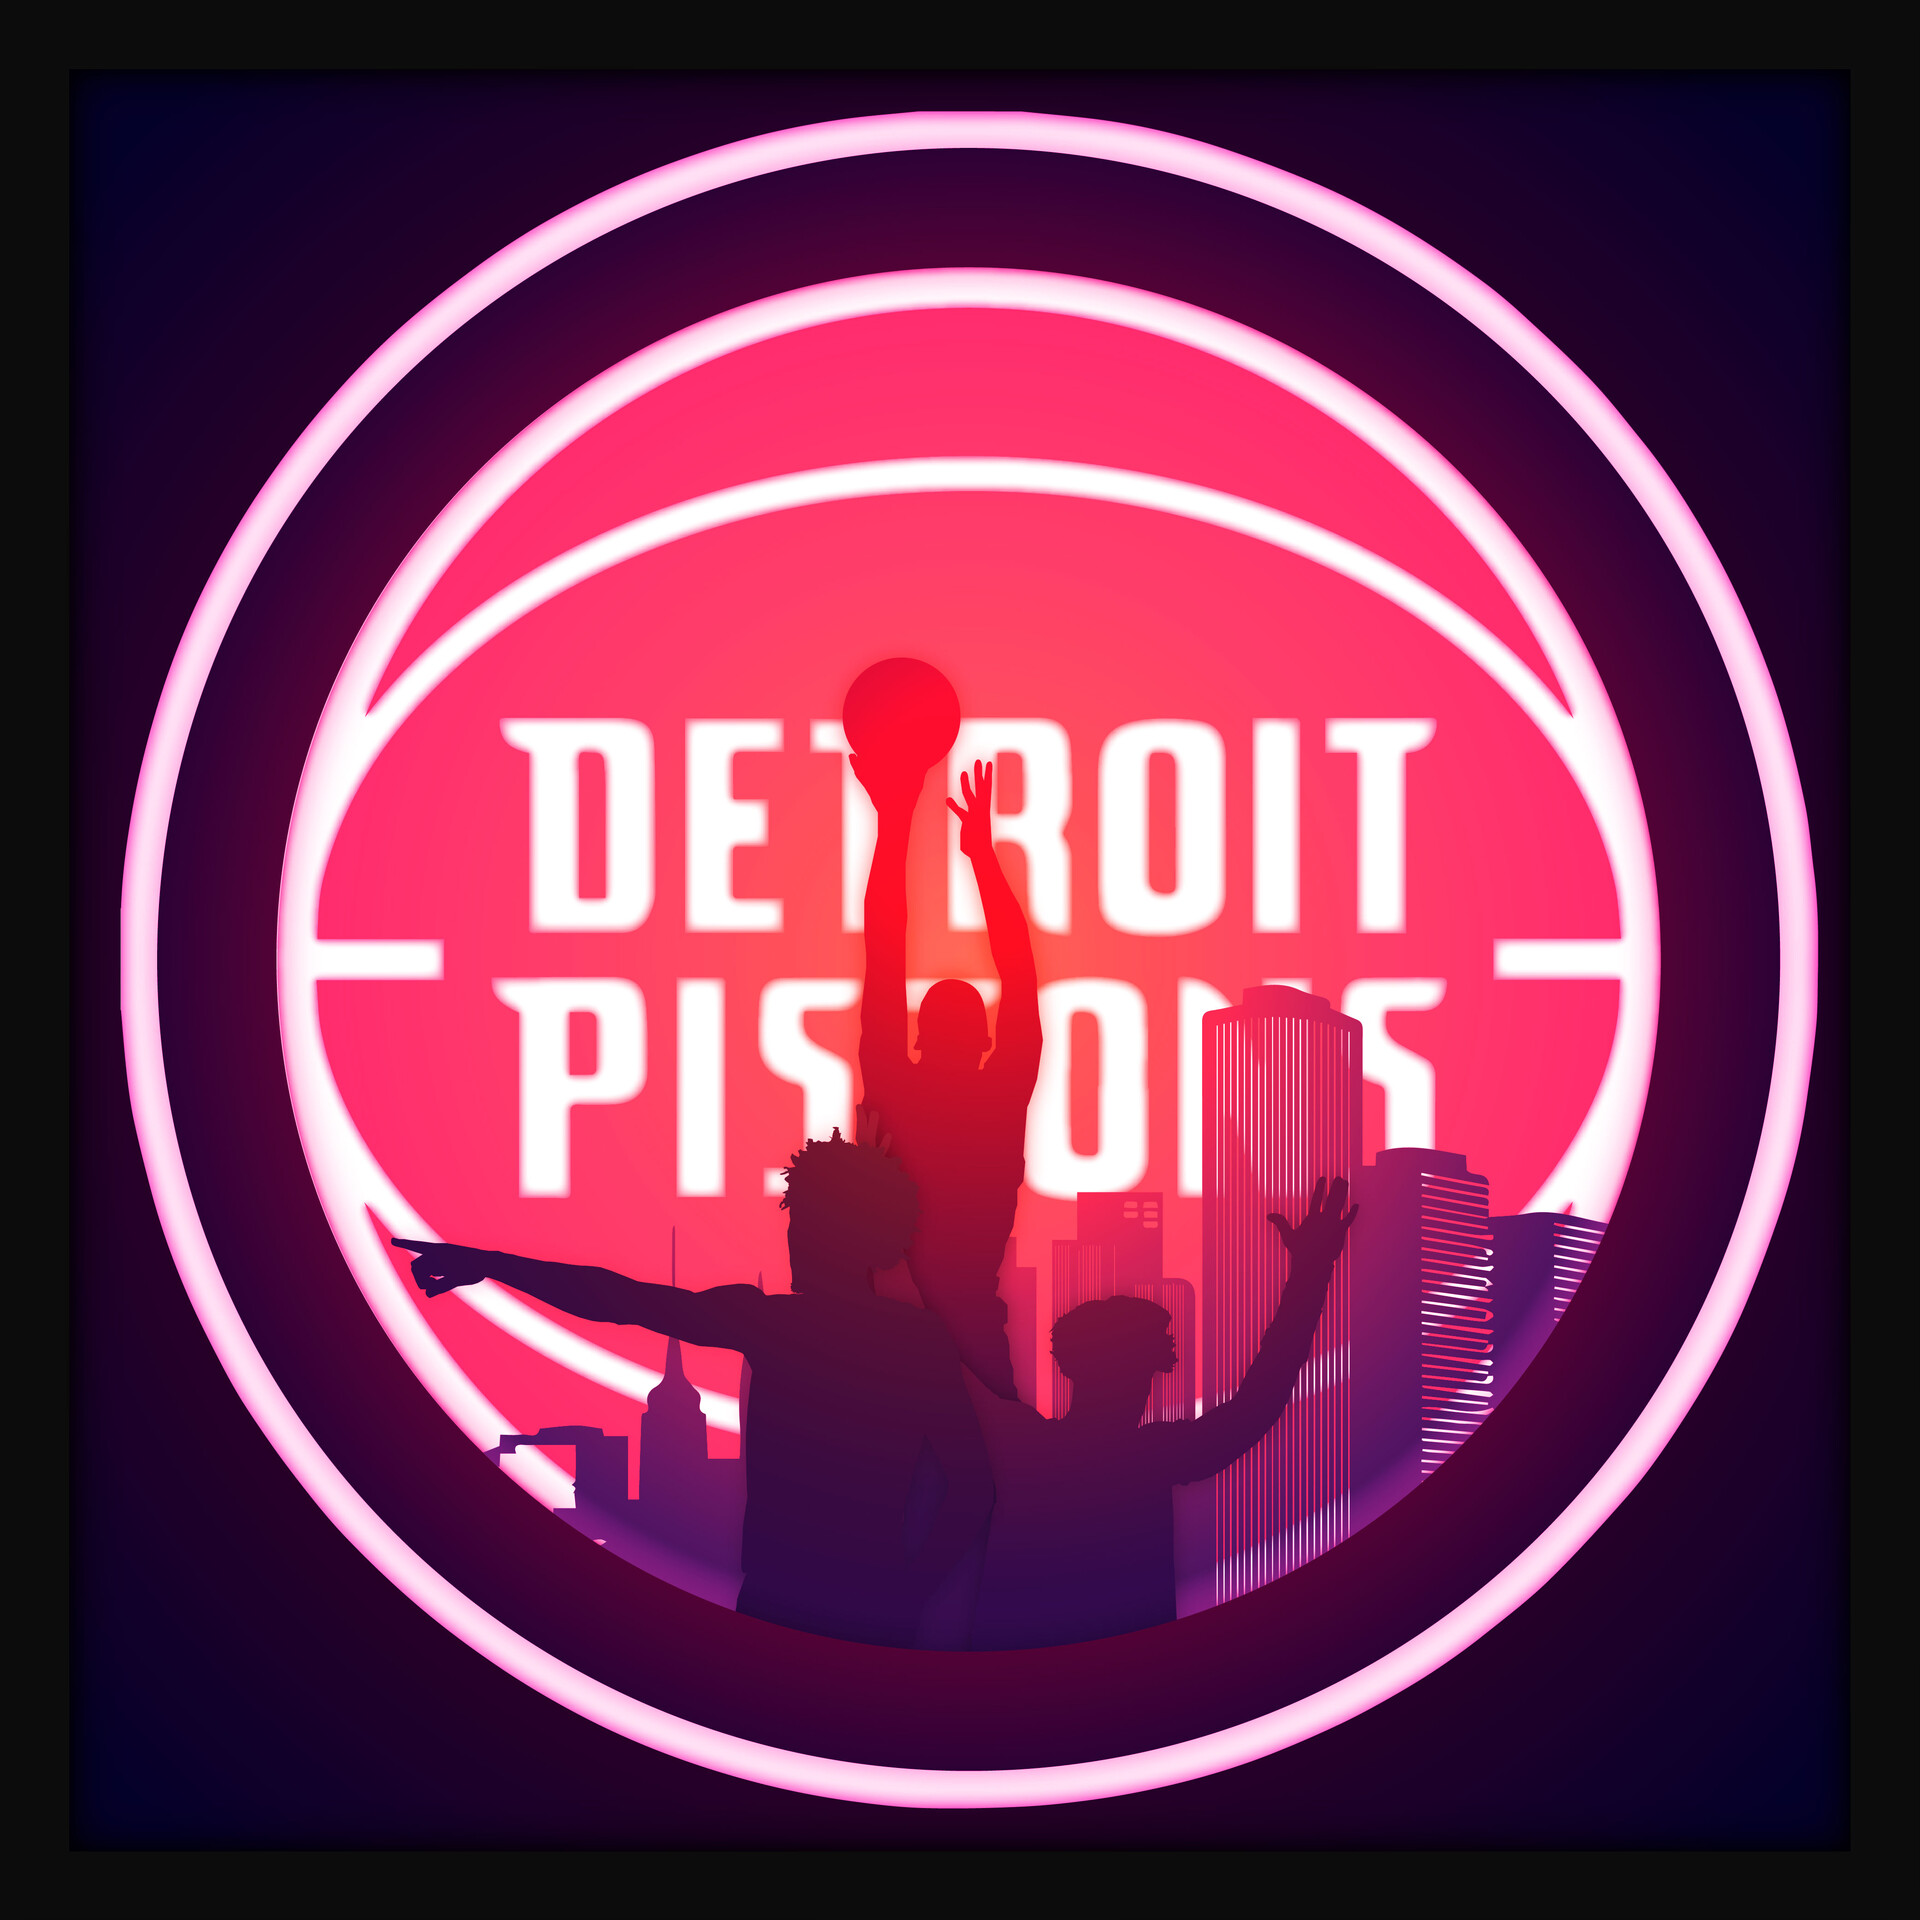 ArtStation - Detroit Pistons Lightbox